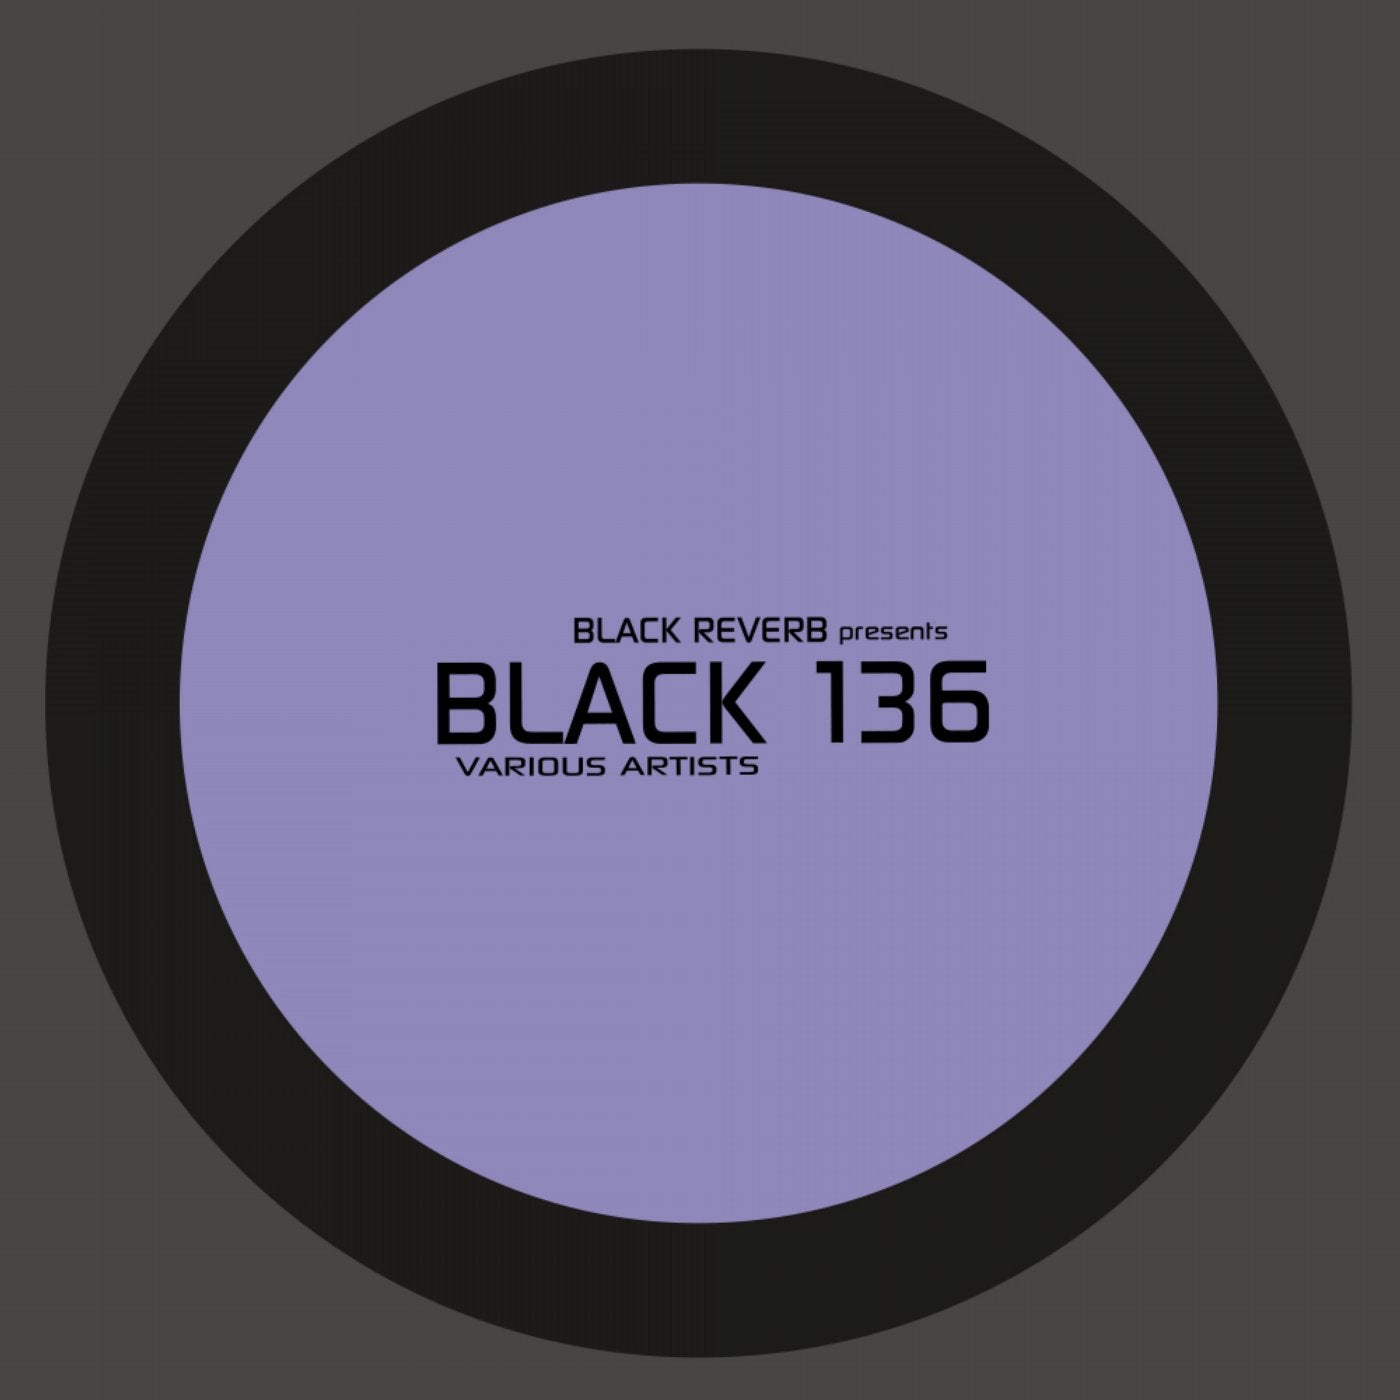 Black 136